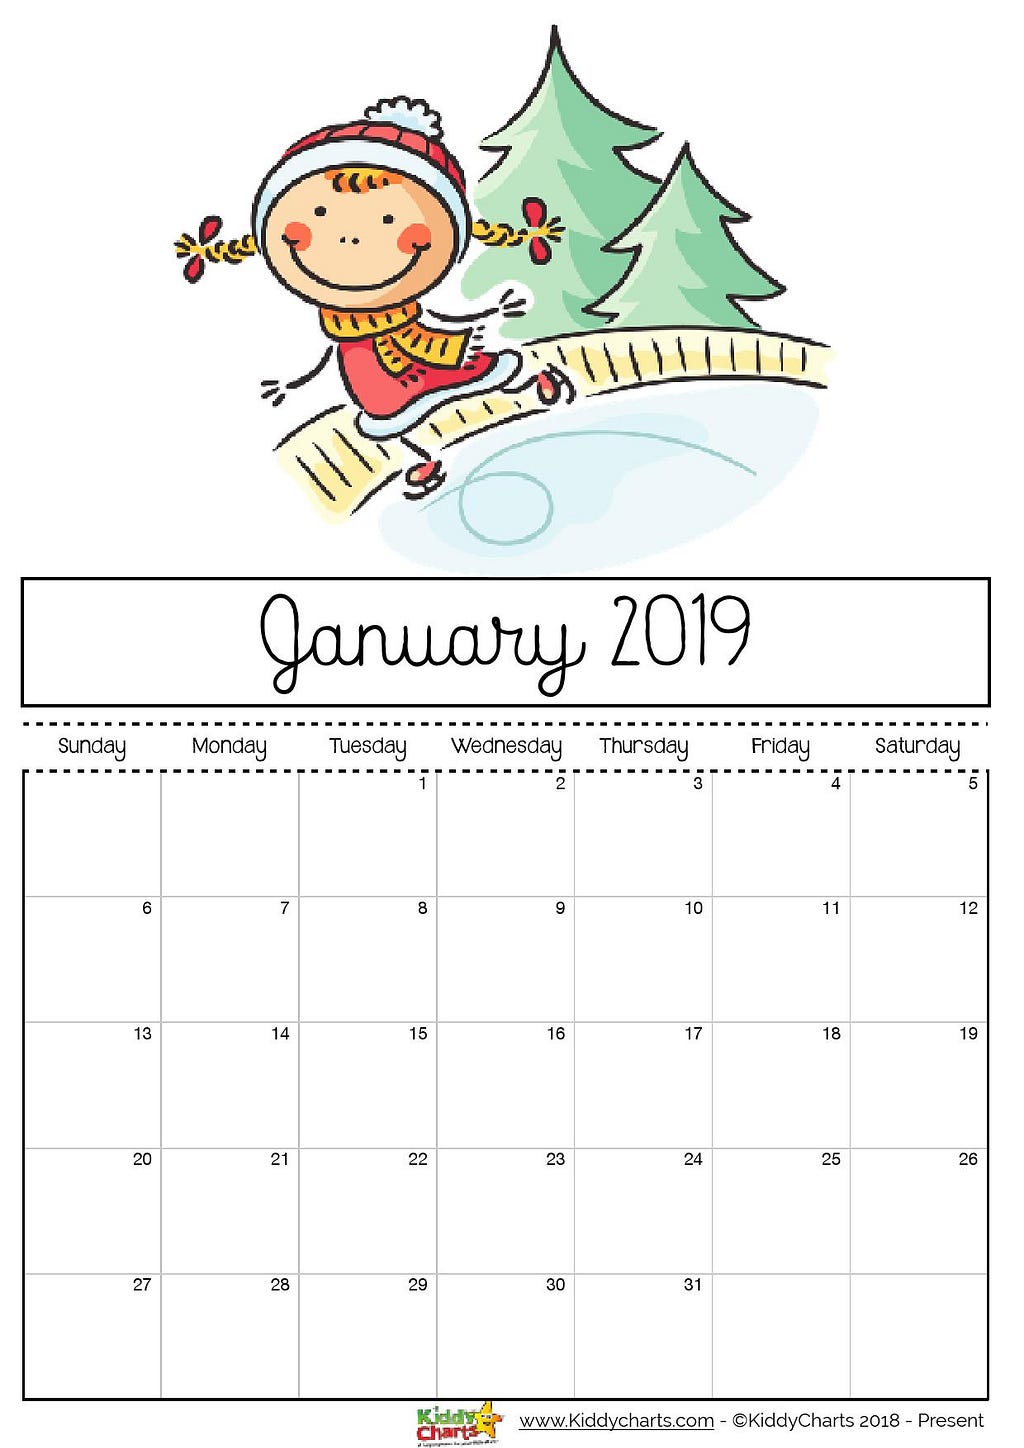 January printable 2019 calendar - girl playing on an ice rink. Perhaps something you can do too?!? #calendar2019 #printables #kidsprintables 